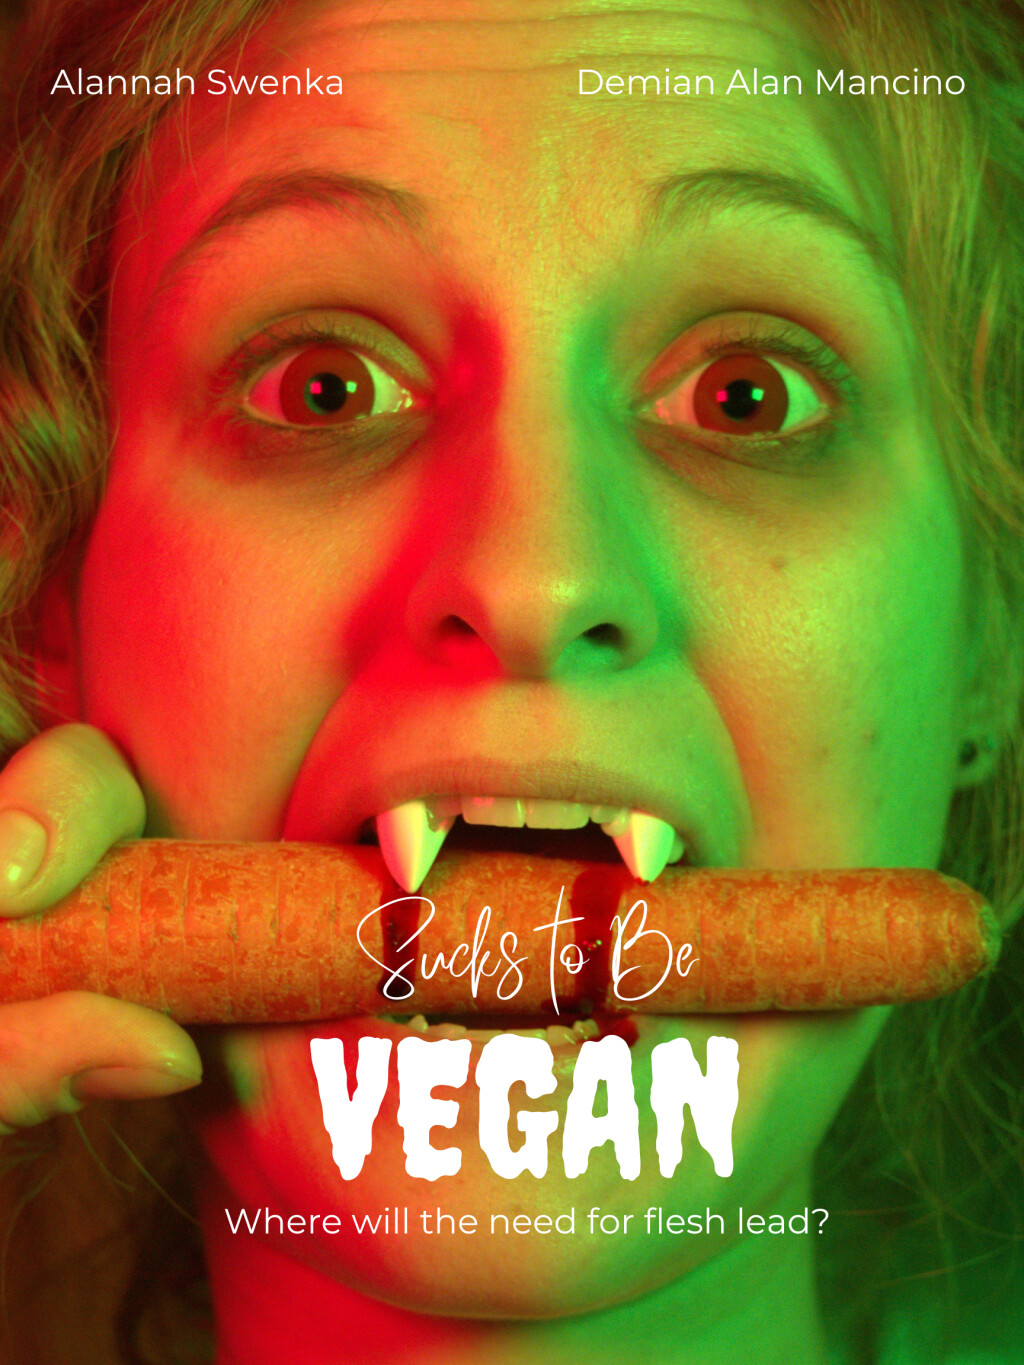 Filmposter for Sucks to be Vegan